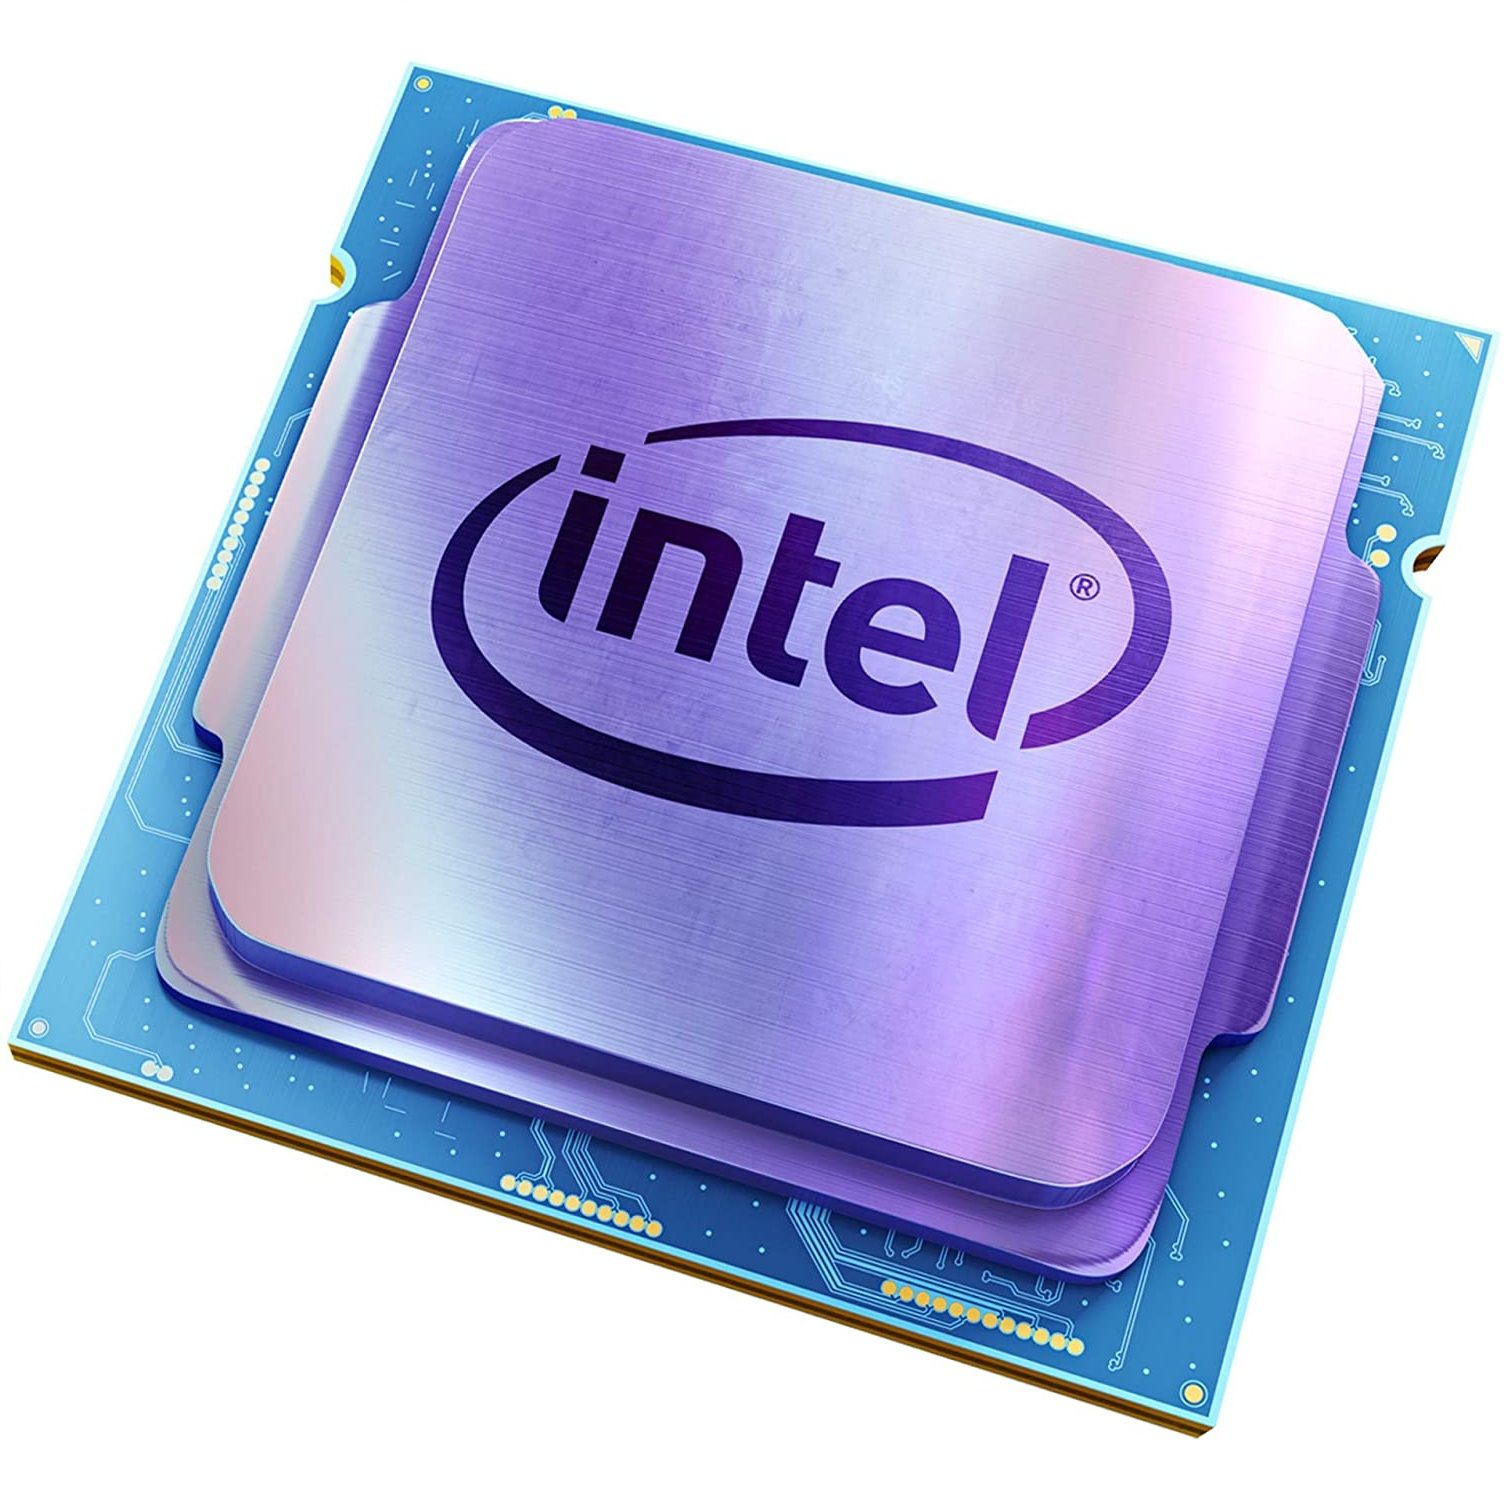 Купить процессор интел 5